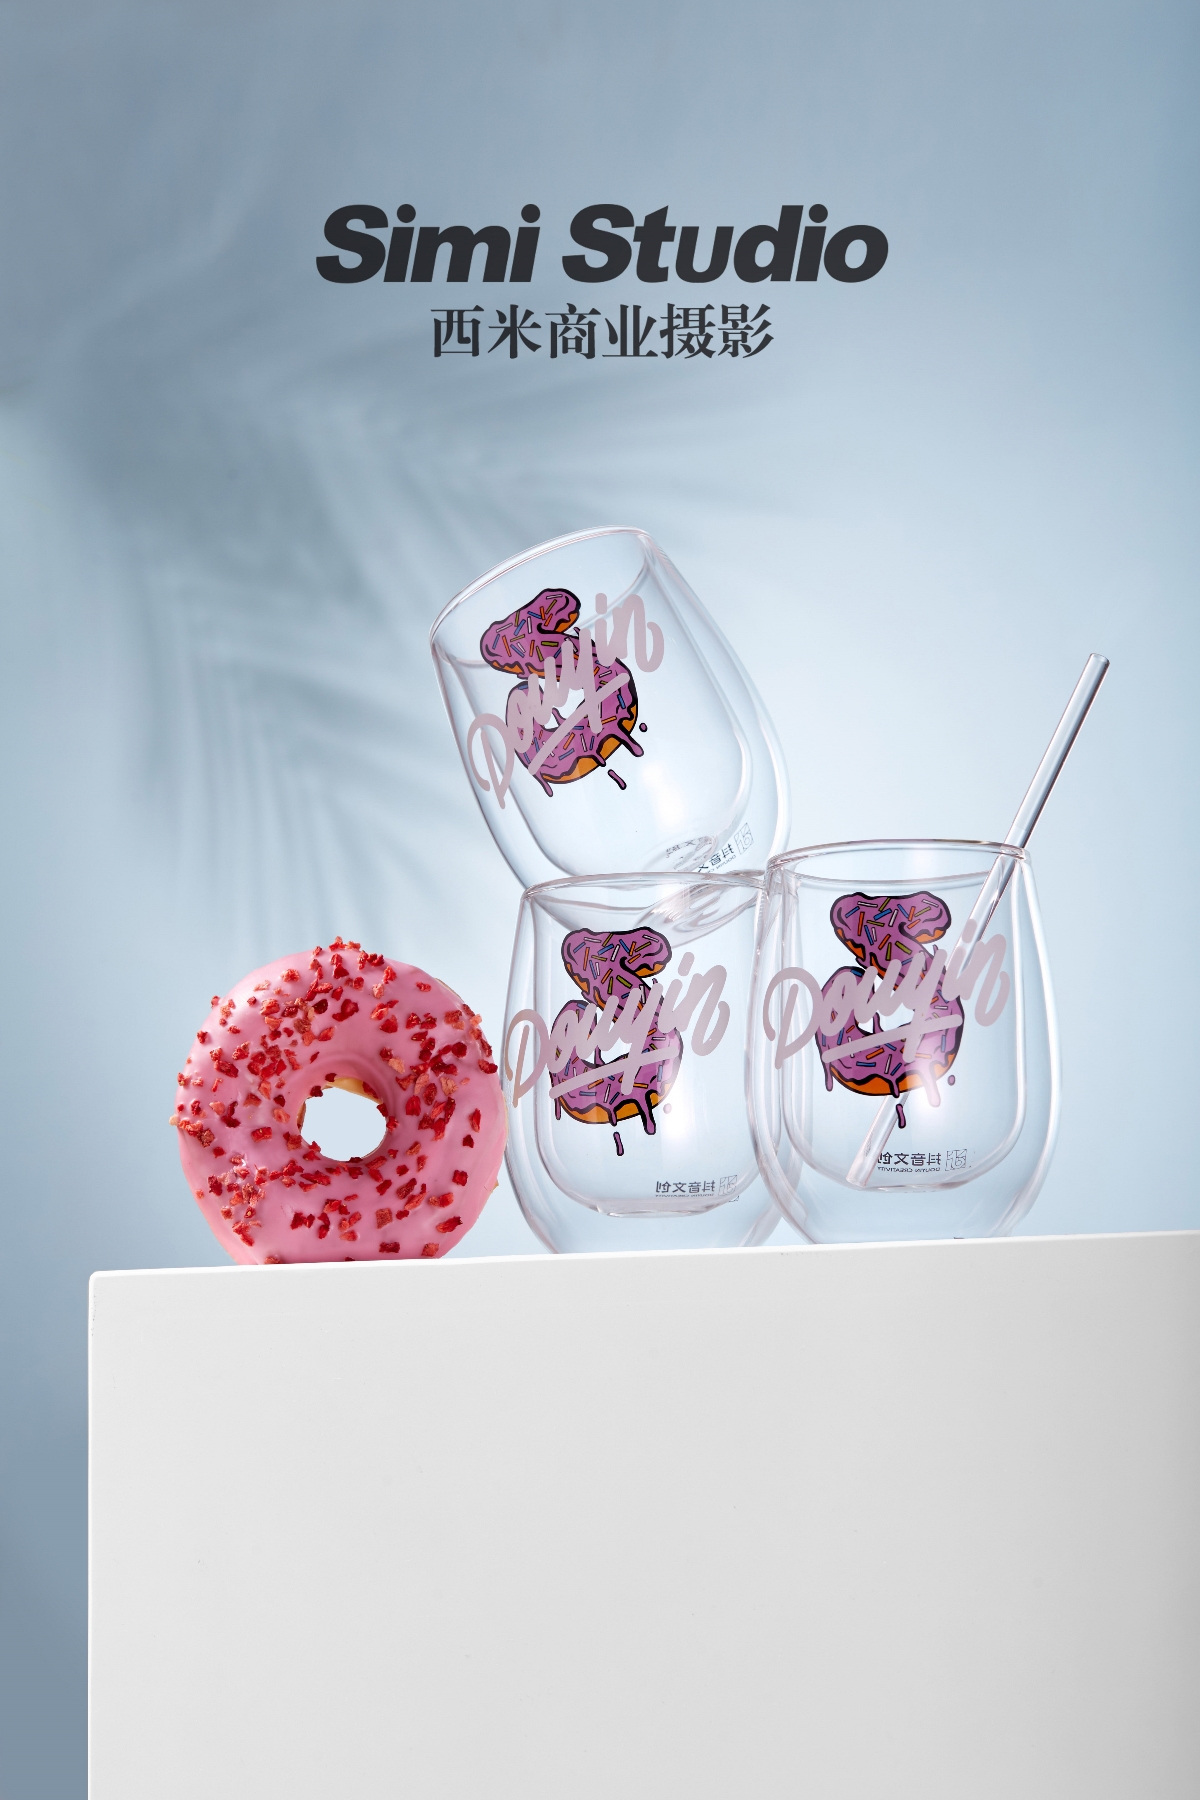 双层玻璃杯拍摄 产品摄影 电商摄影 淘宝摄影 北京西米商业摄影